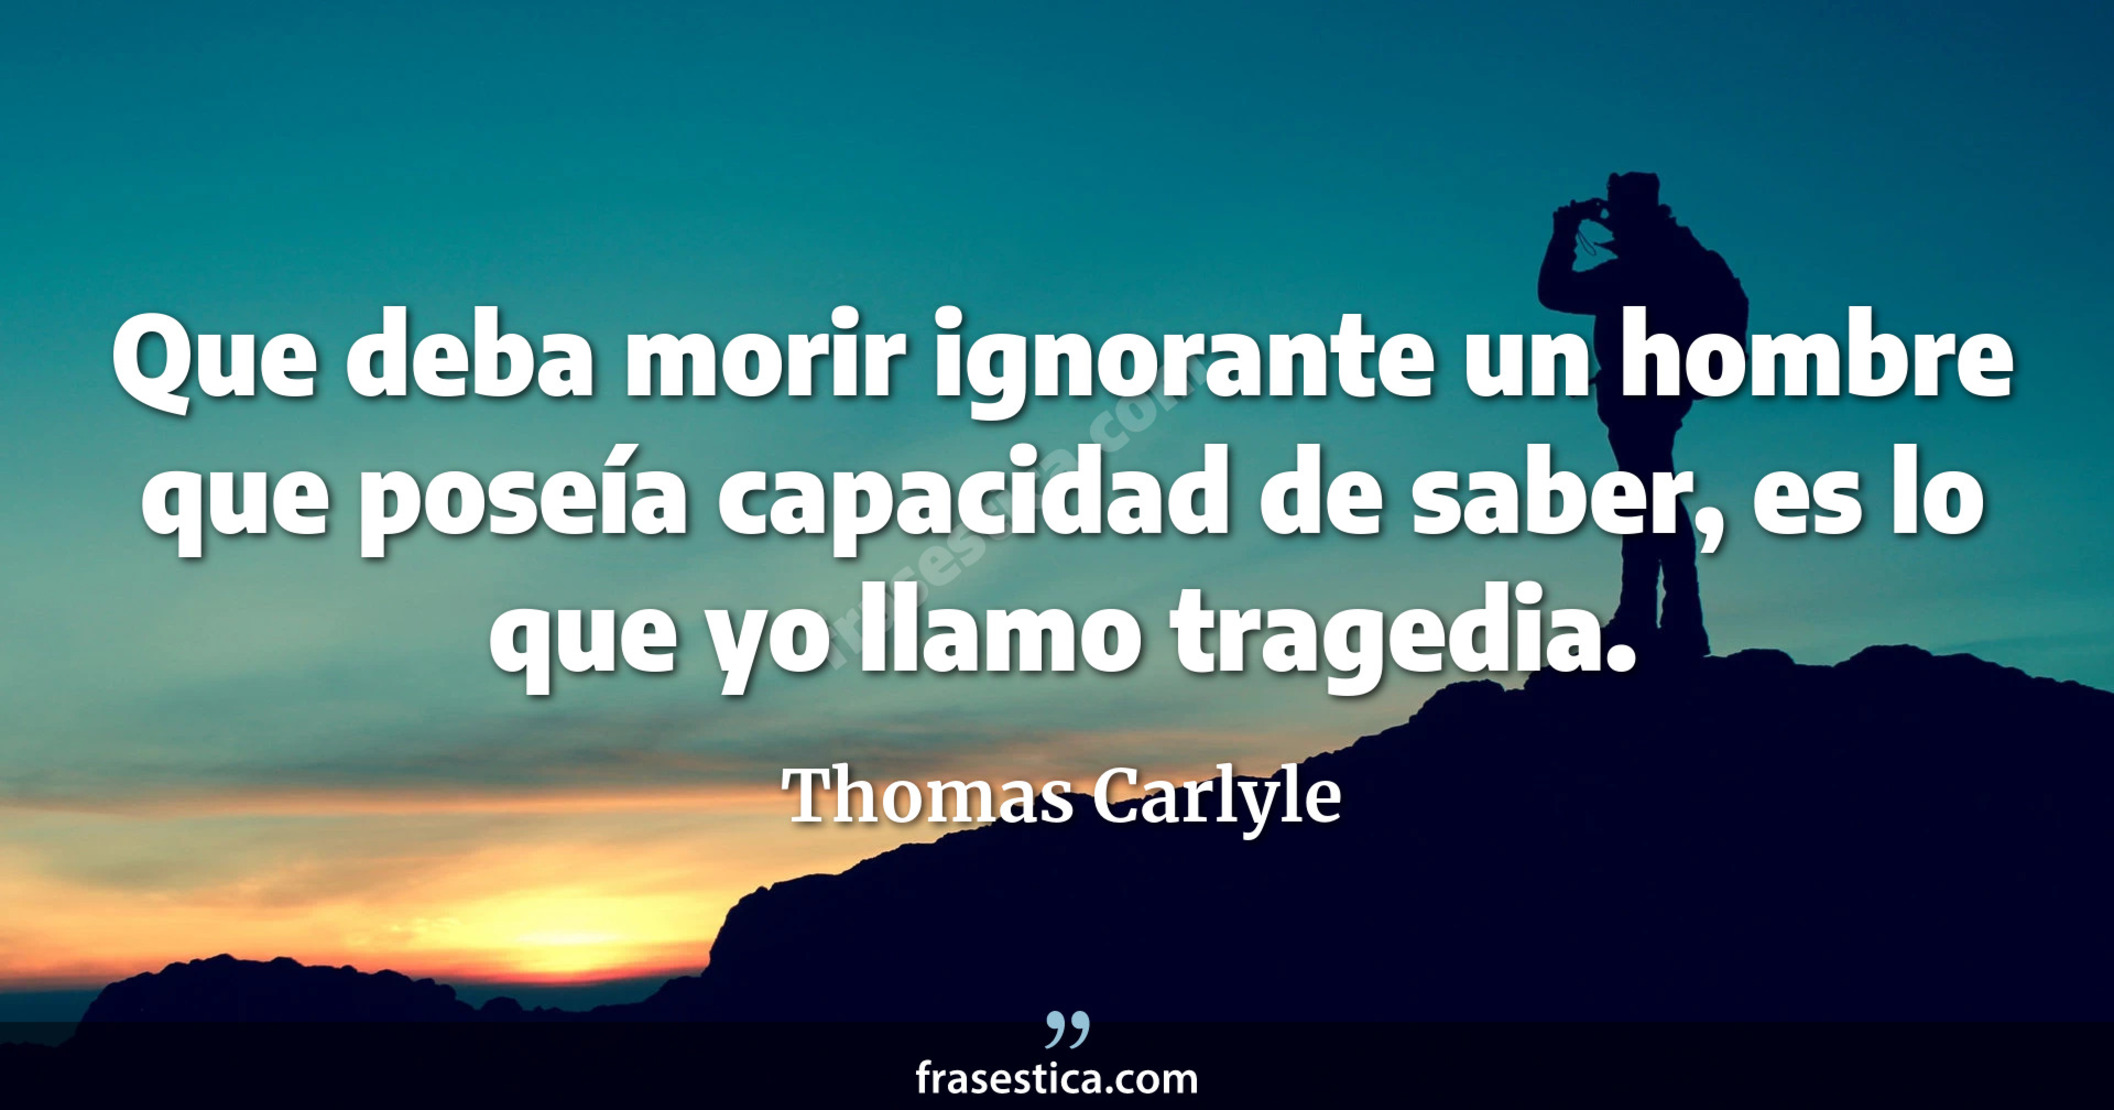 Que deba morir ignorante un hombre que poseía capacidad de saber, es lo que yo llamo tragedia. - Thomas Carlyle